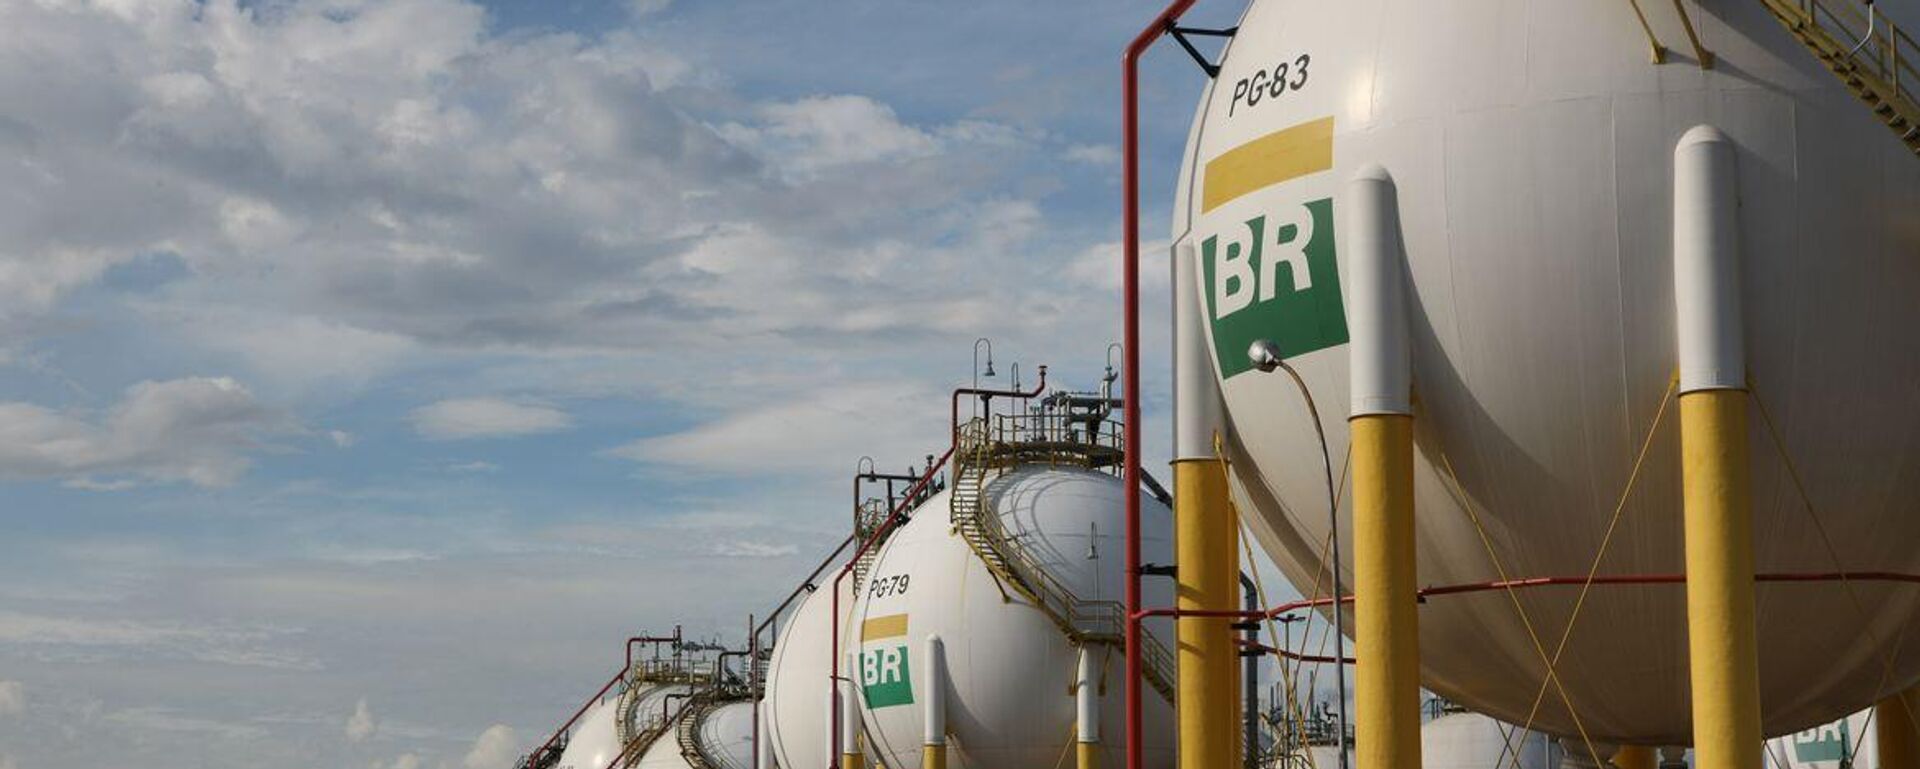 Esferas de armazenamento de gás liquefeito de petróleo (GLP) da Refinaria Duque de Caxias (Reduc), da Petrobras. Duque de Caxias (RJ), 20 de março de 2013 (foto de arquivo) - Sputnik Brasil, 1920, 15.02.2023